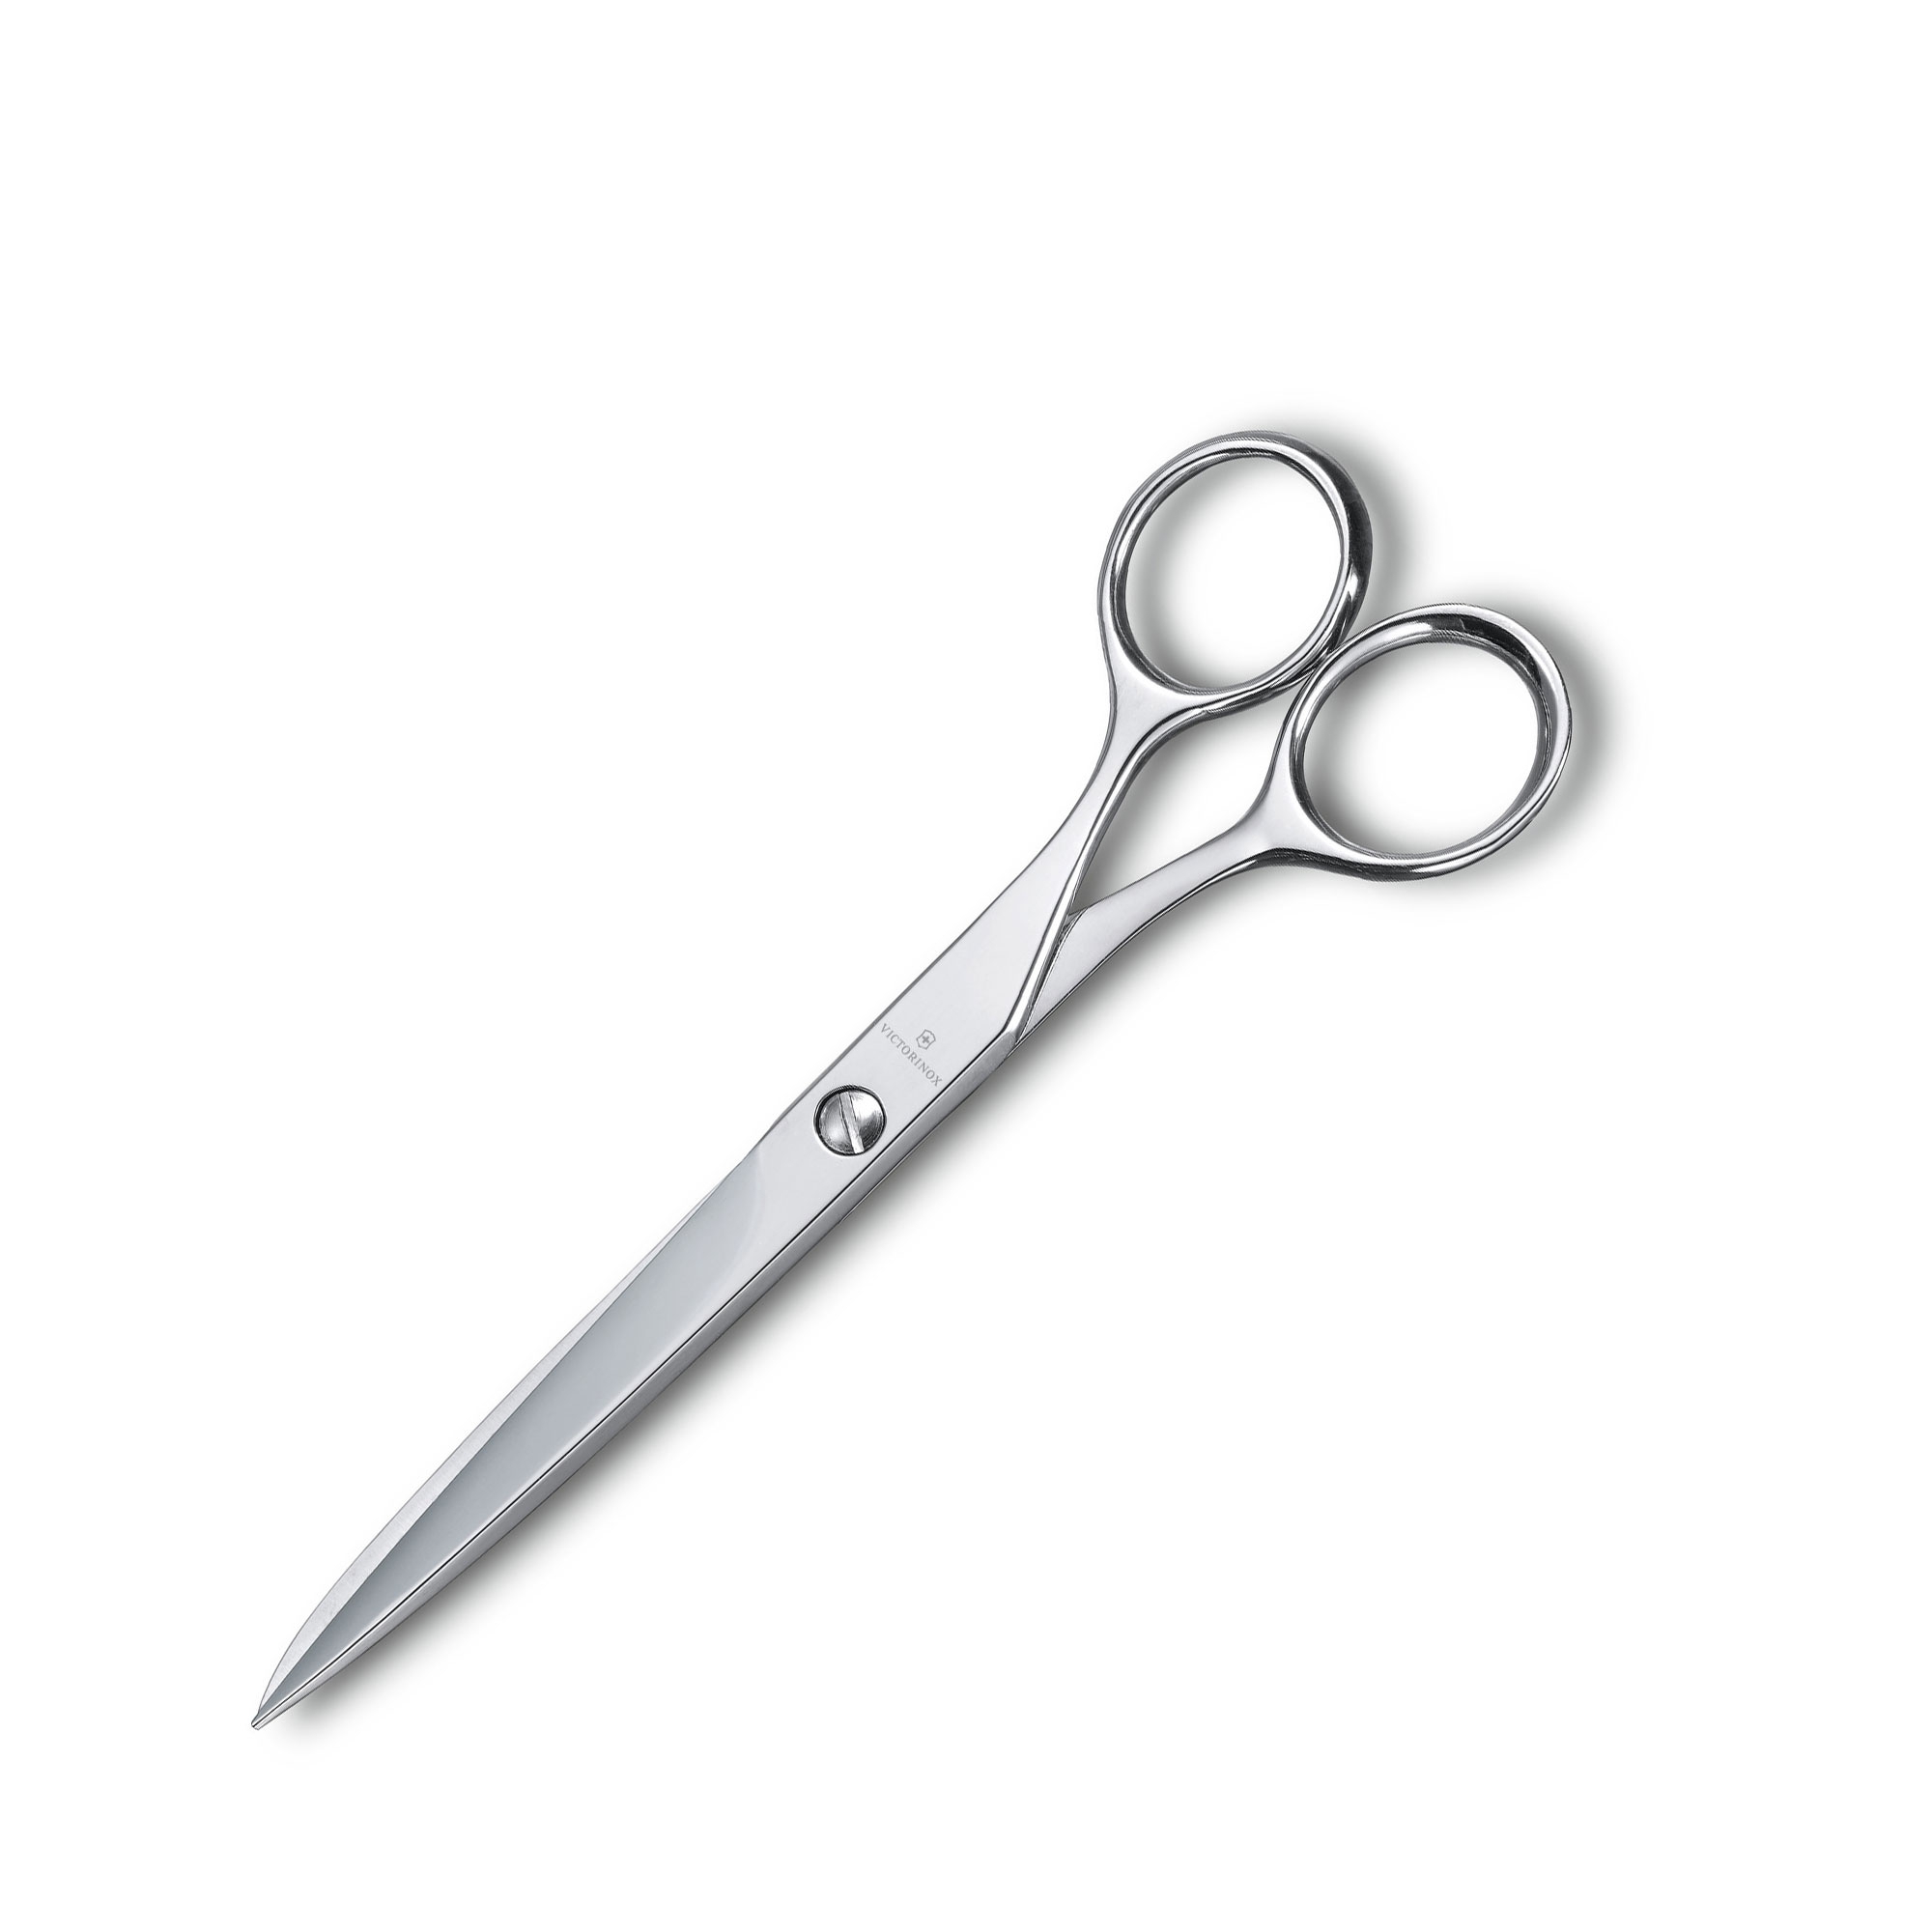 Victorinox - Household scissors "Sweden"